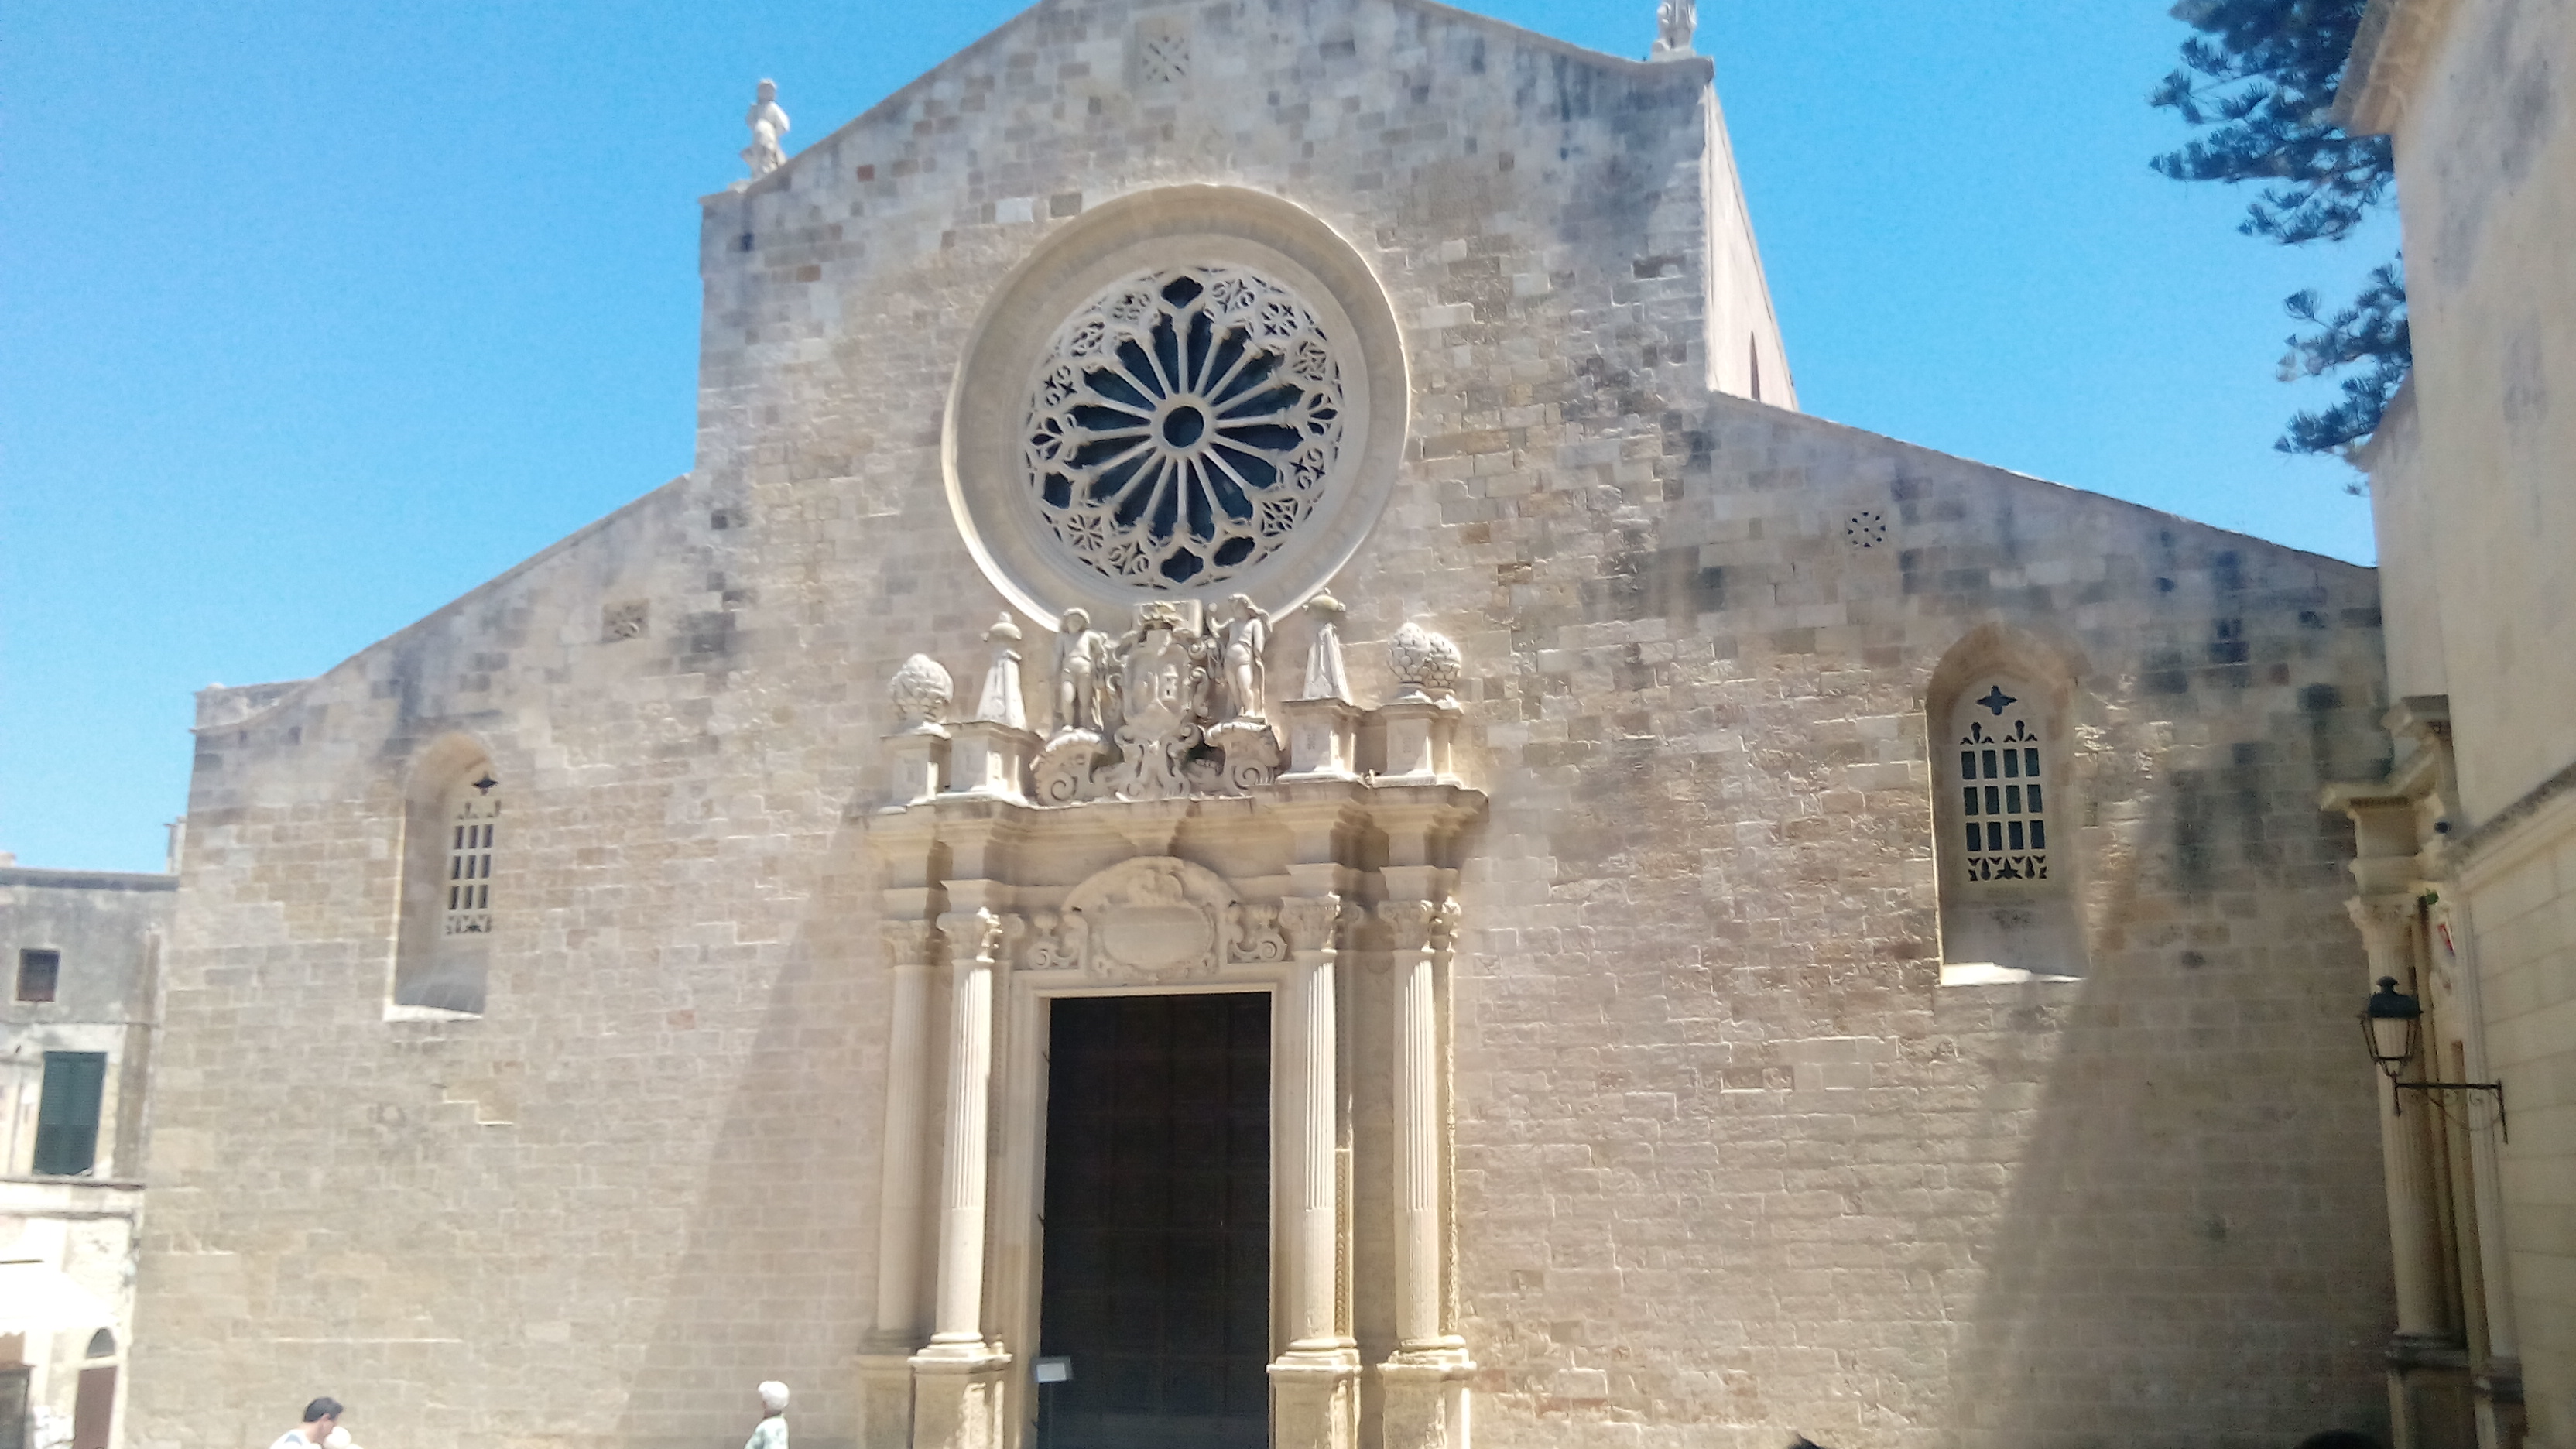 The Cathedral of Otranto (photo by Marcella Calascibetta)